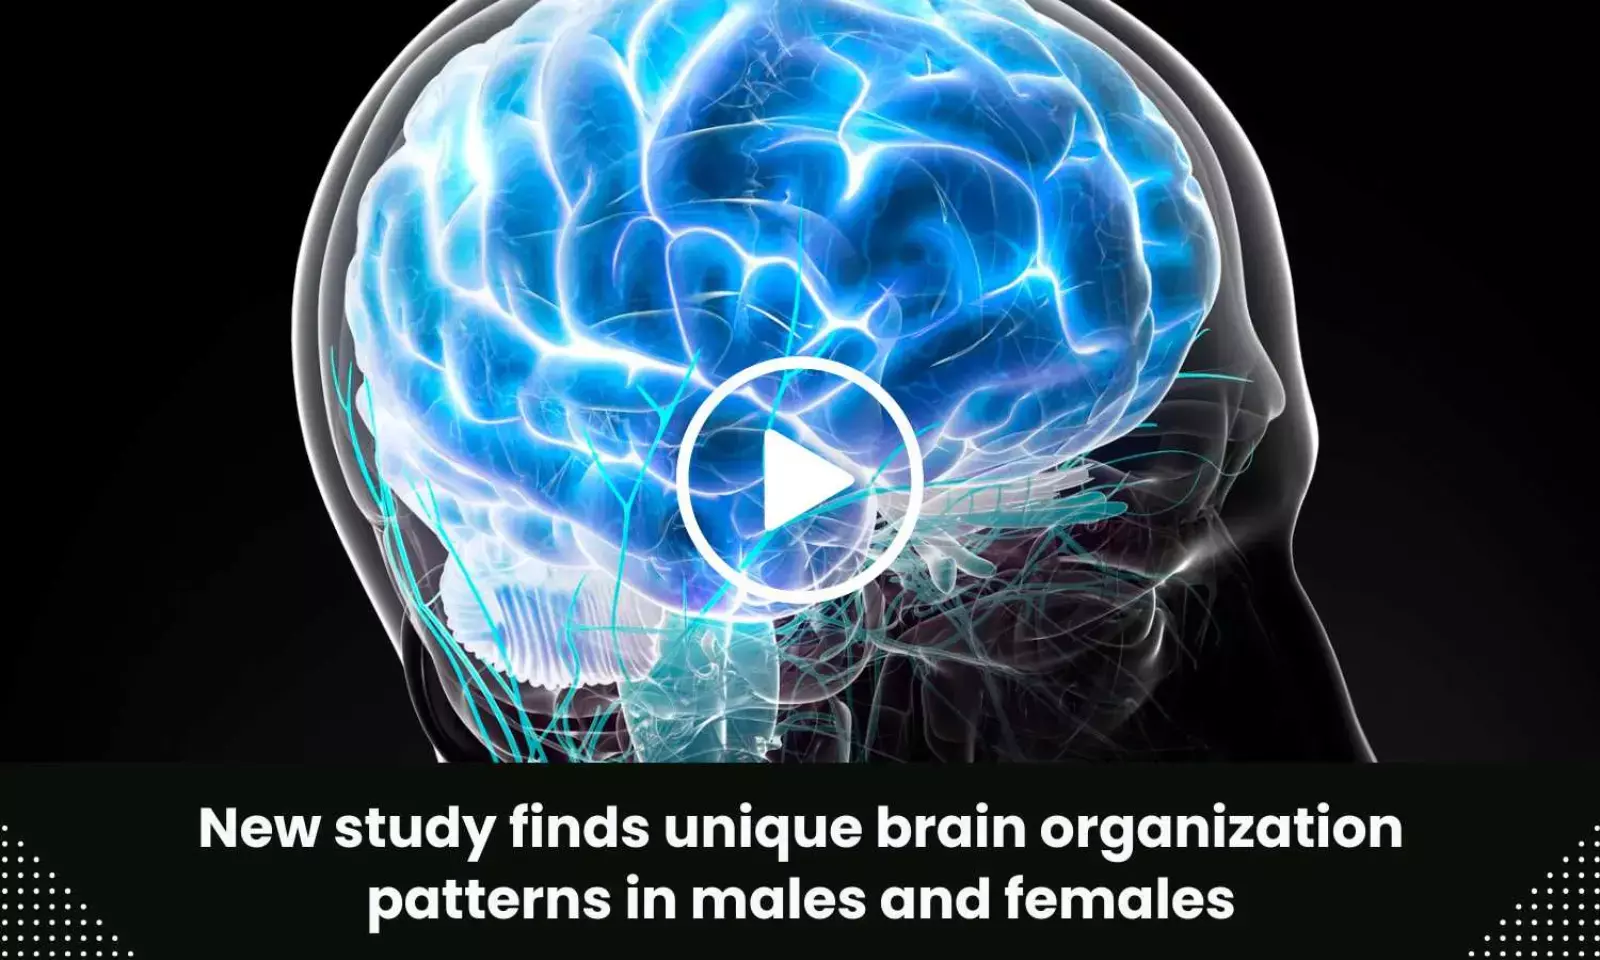 Stanford Medicine study identifies distinct brain organization